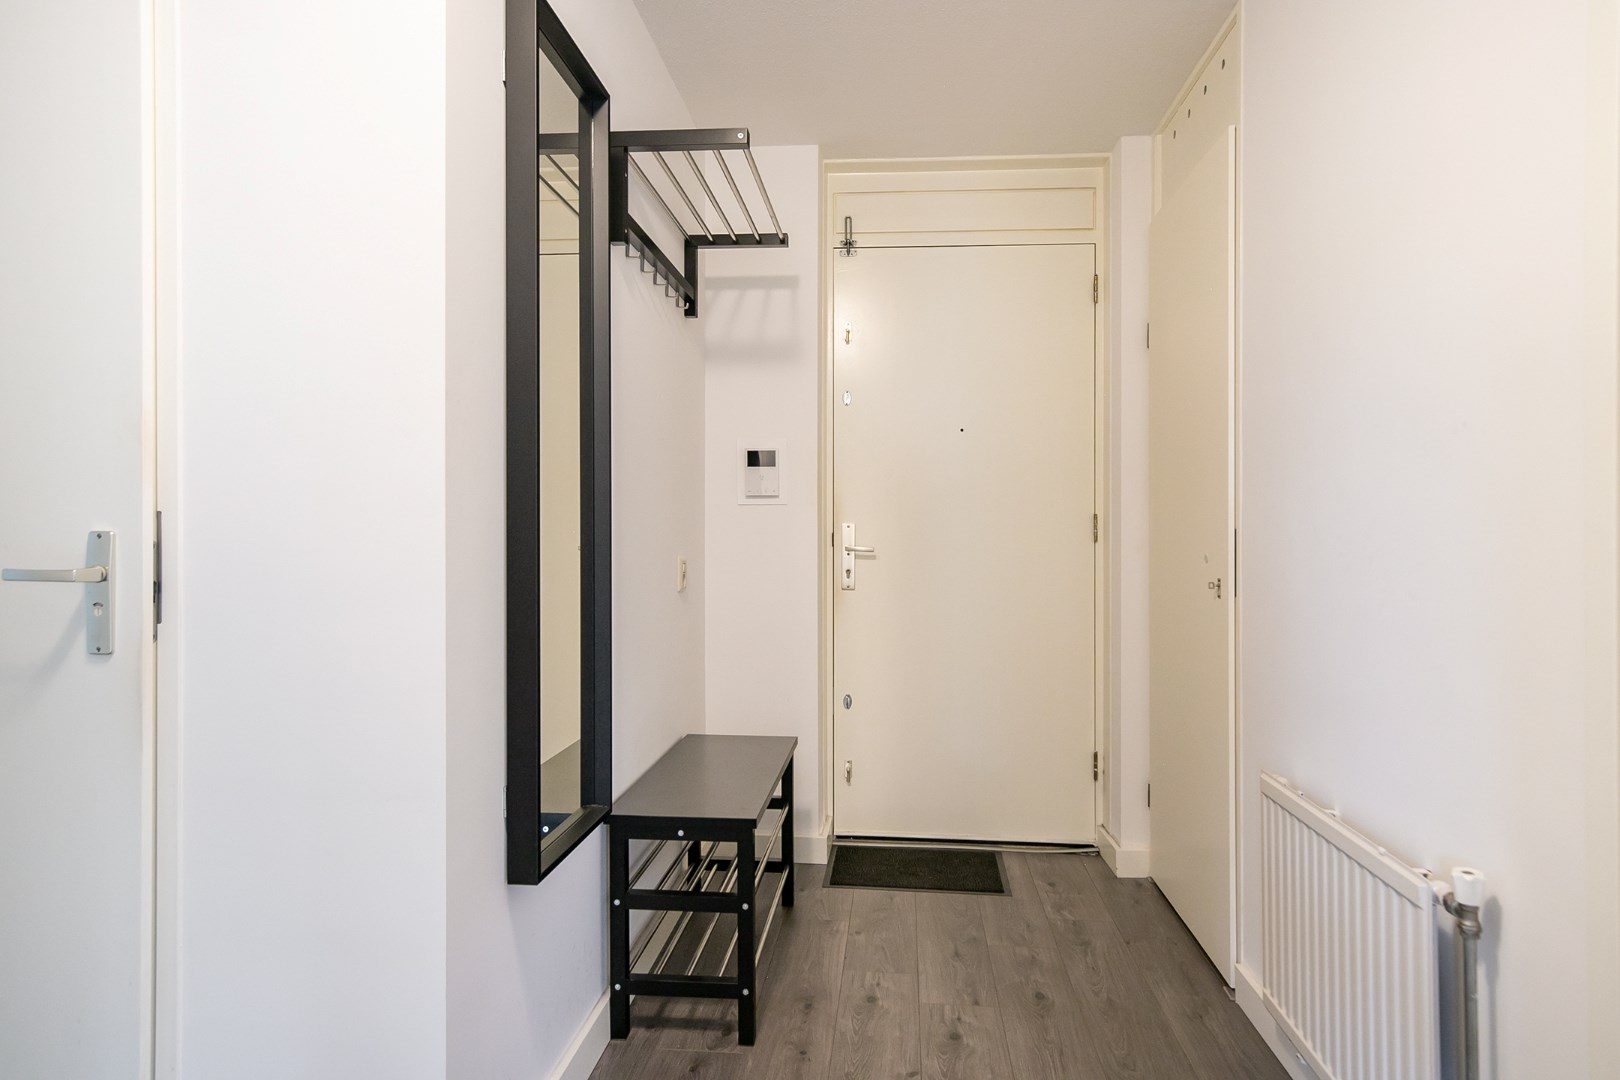 Staan de verhuisdozen al klaar? Want u kunt dit heerlijke 3-kamer appartement met ruim balkon zonder klussen betrekken! 